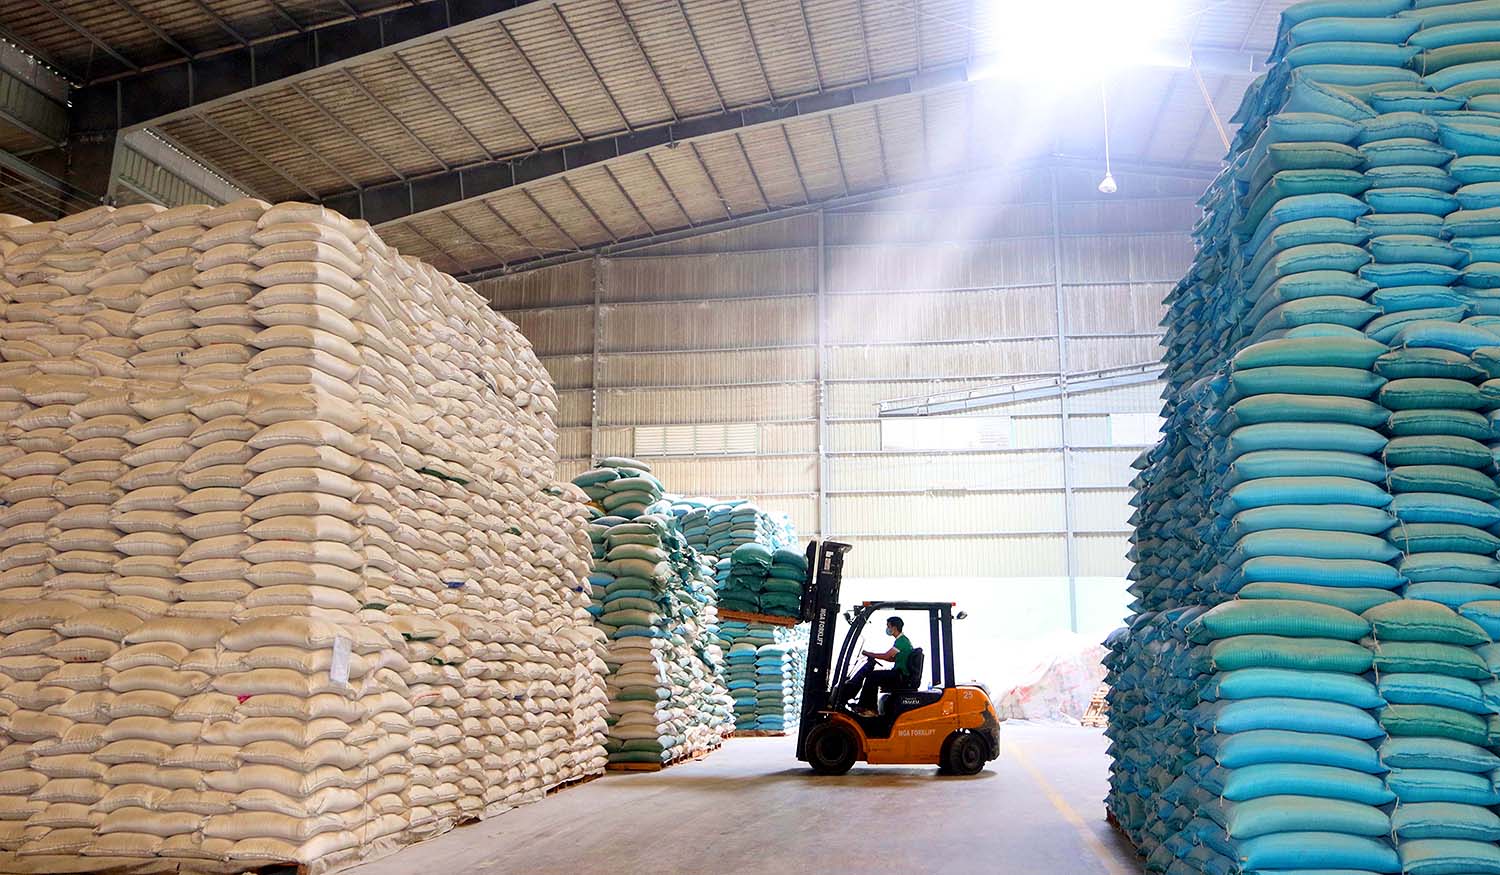 Gạo đang có cơ hội xuất khẩu lớn khi thị trường mở rộng và giá tăng	Ảnh: Dũng Minh